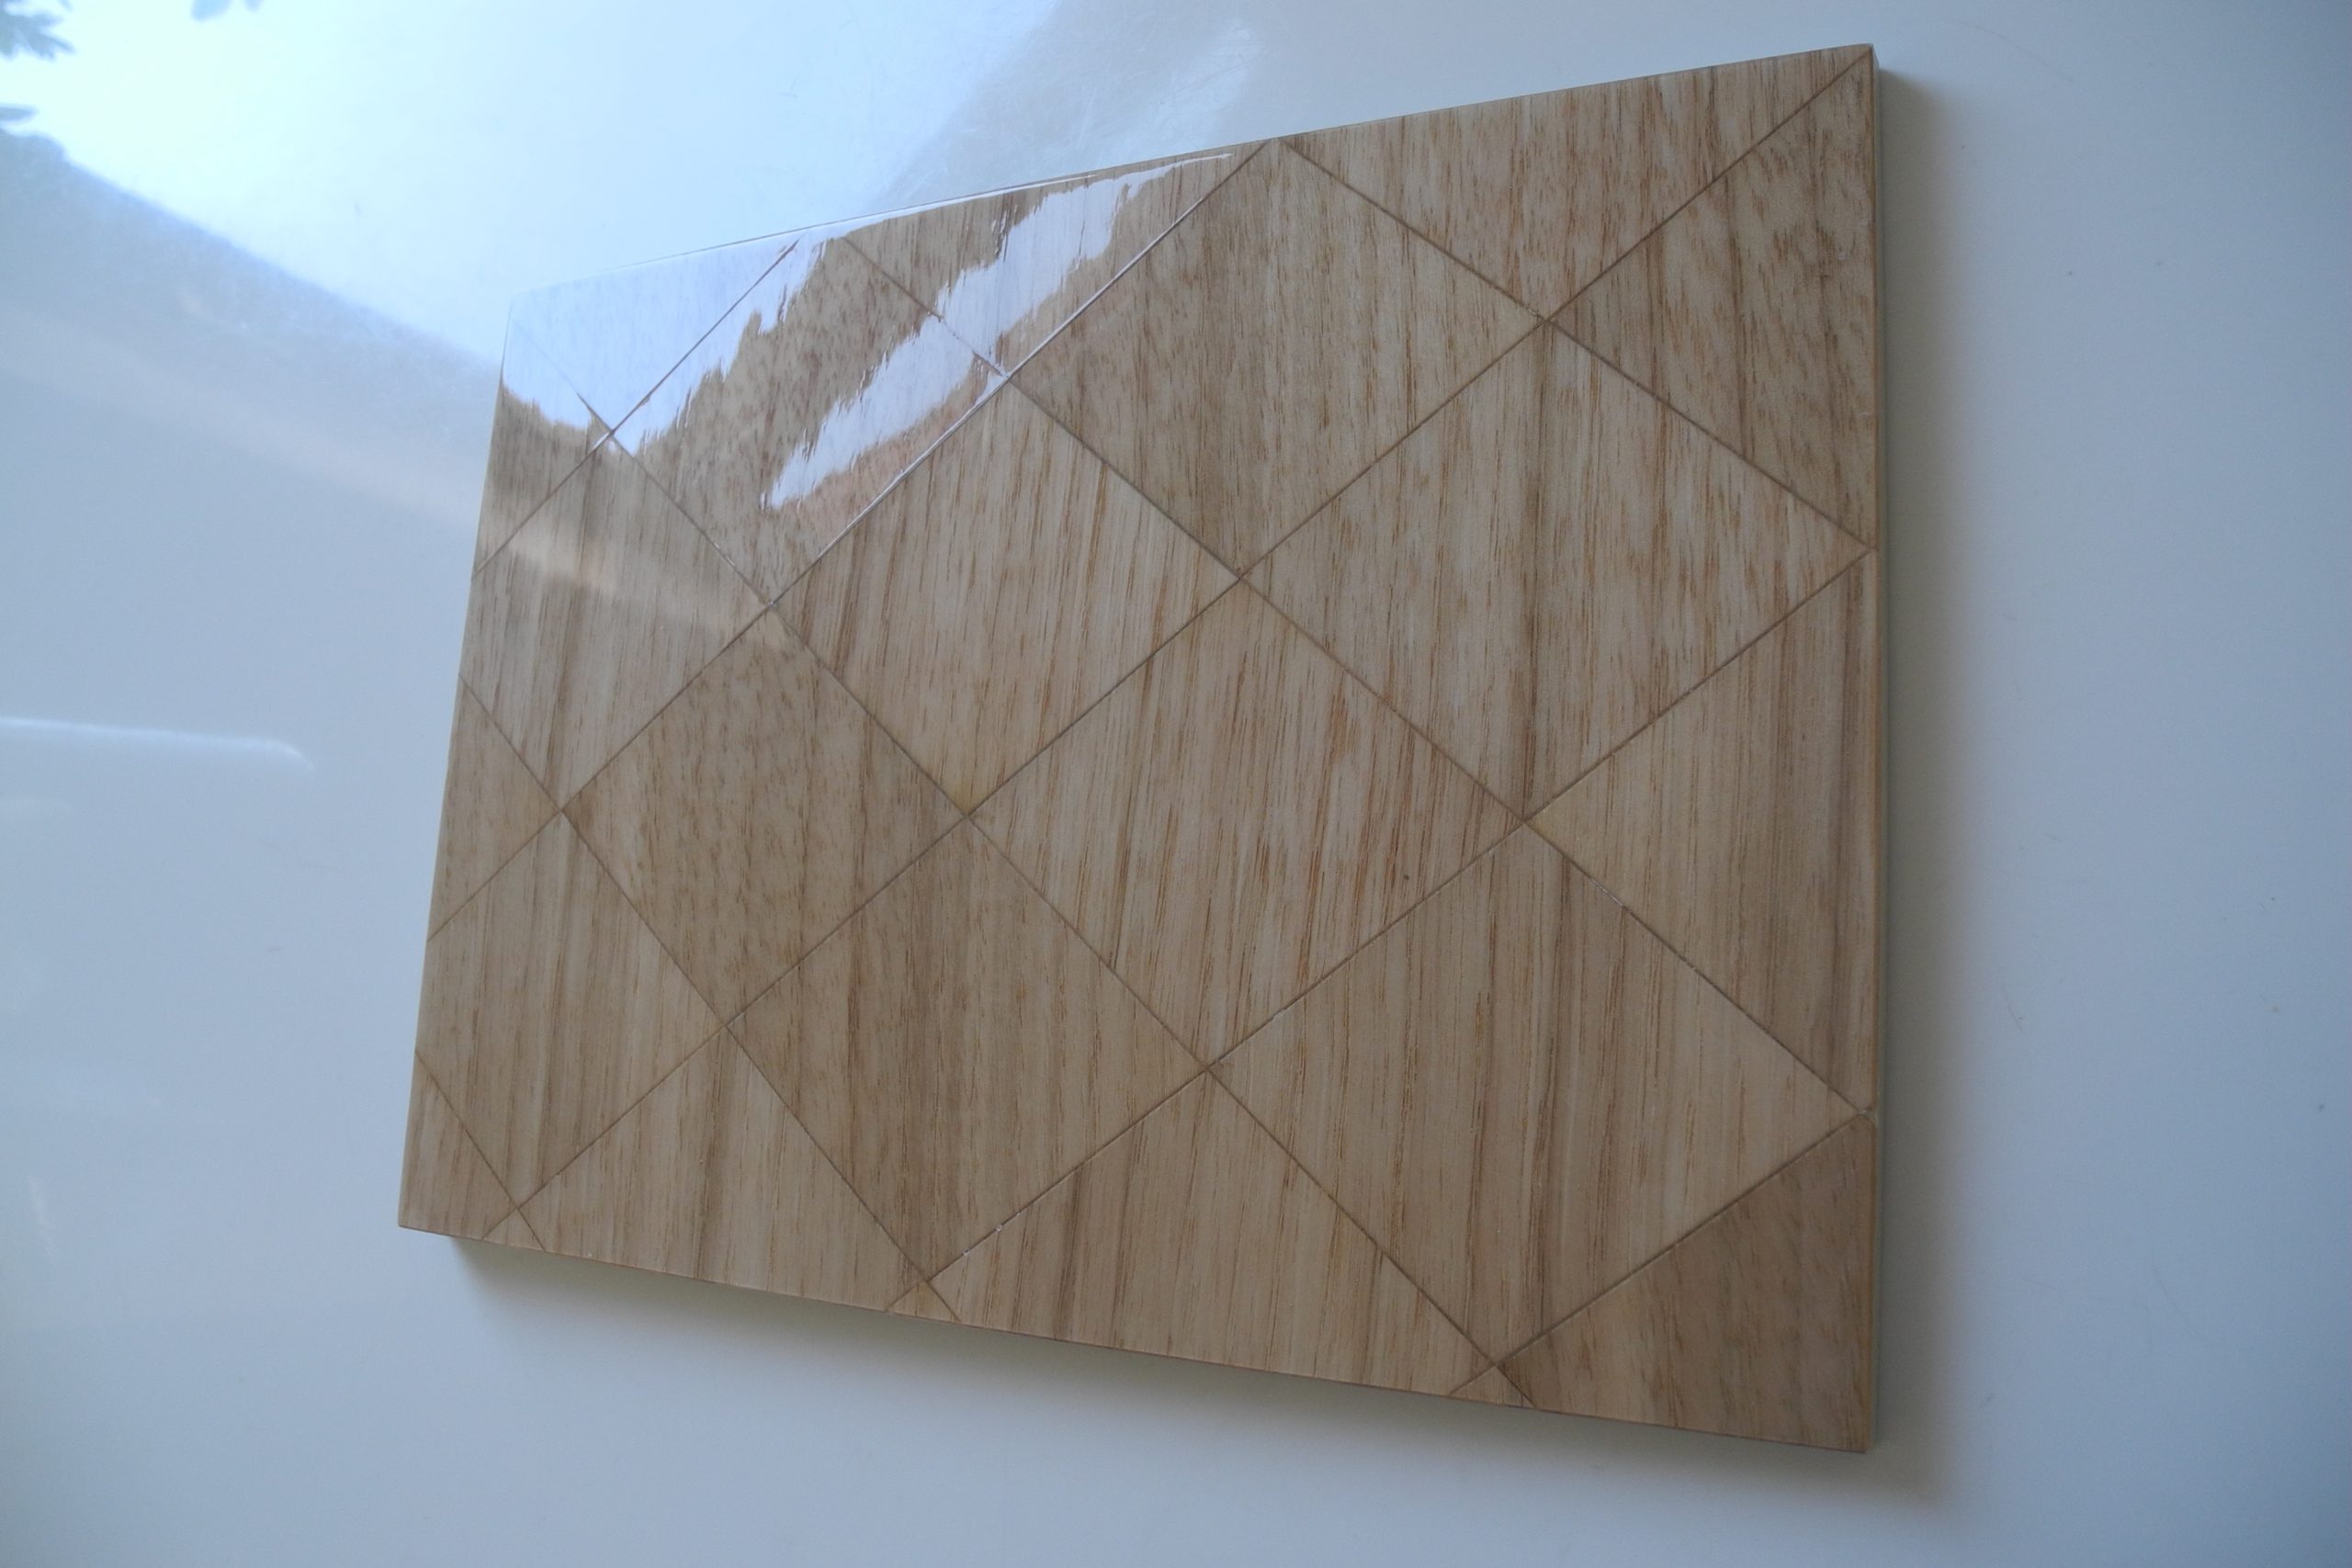 Probefläche eines Holzfurniers mit Rautendesign und glänzendem Lack.